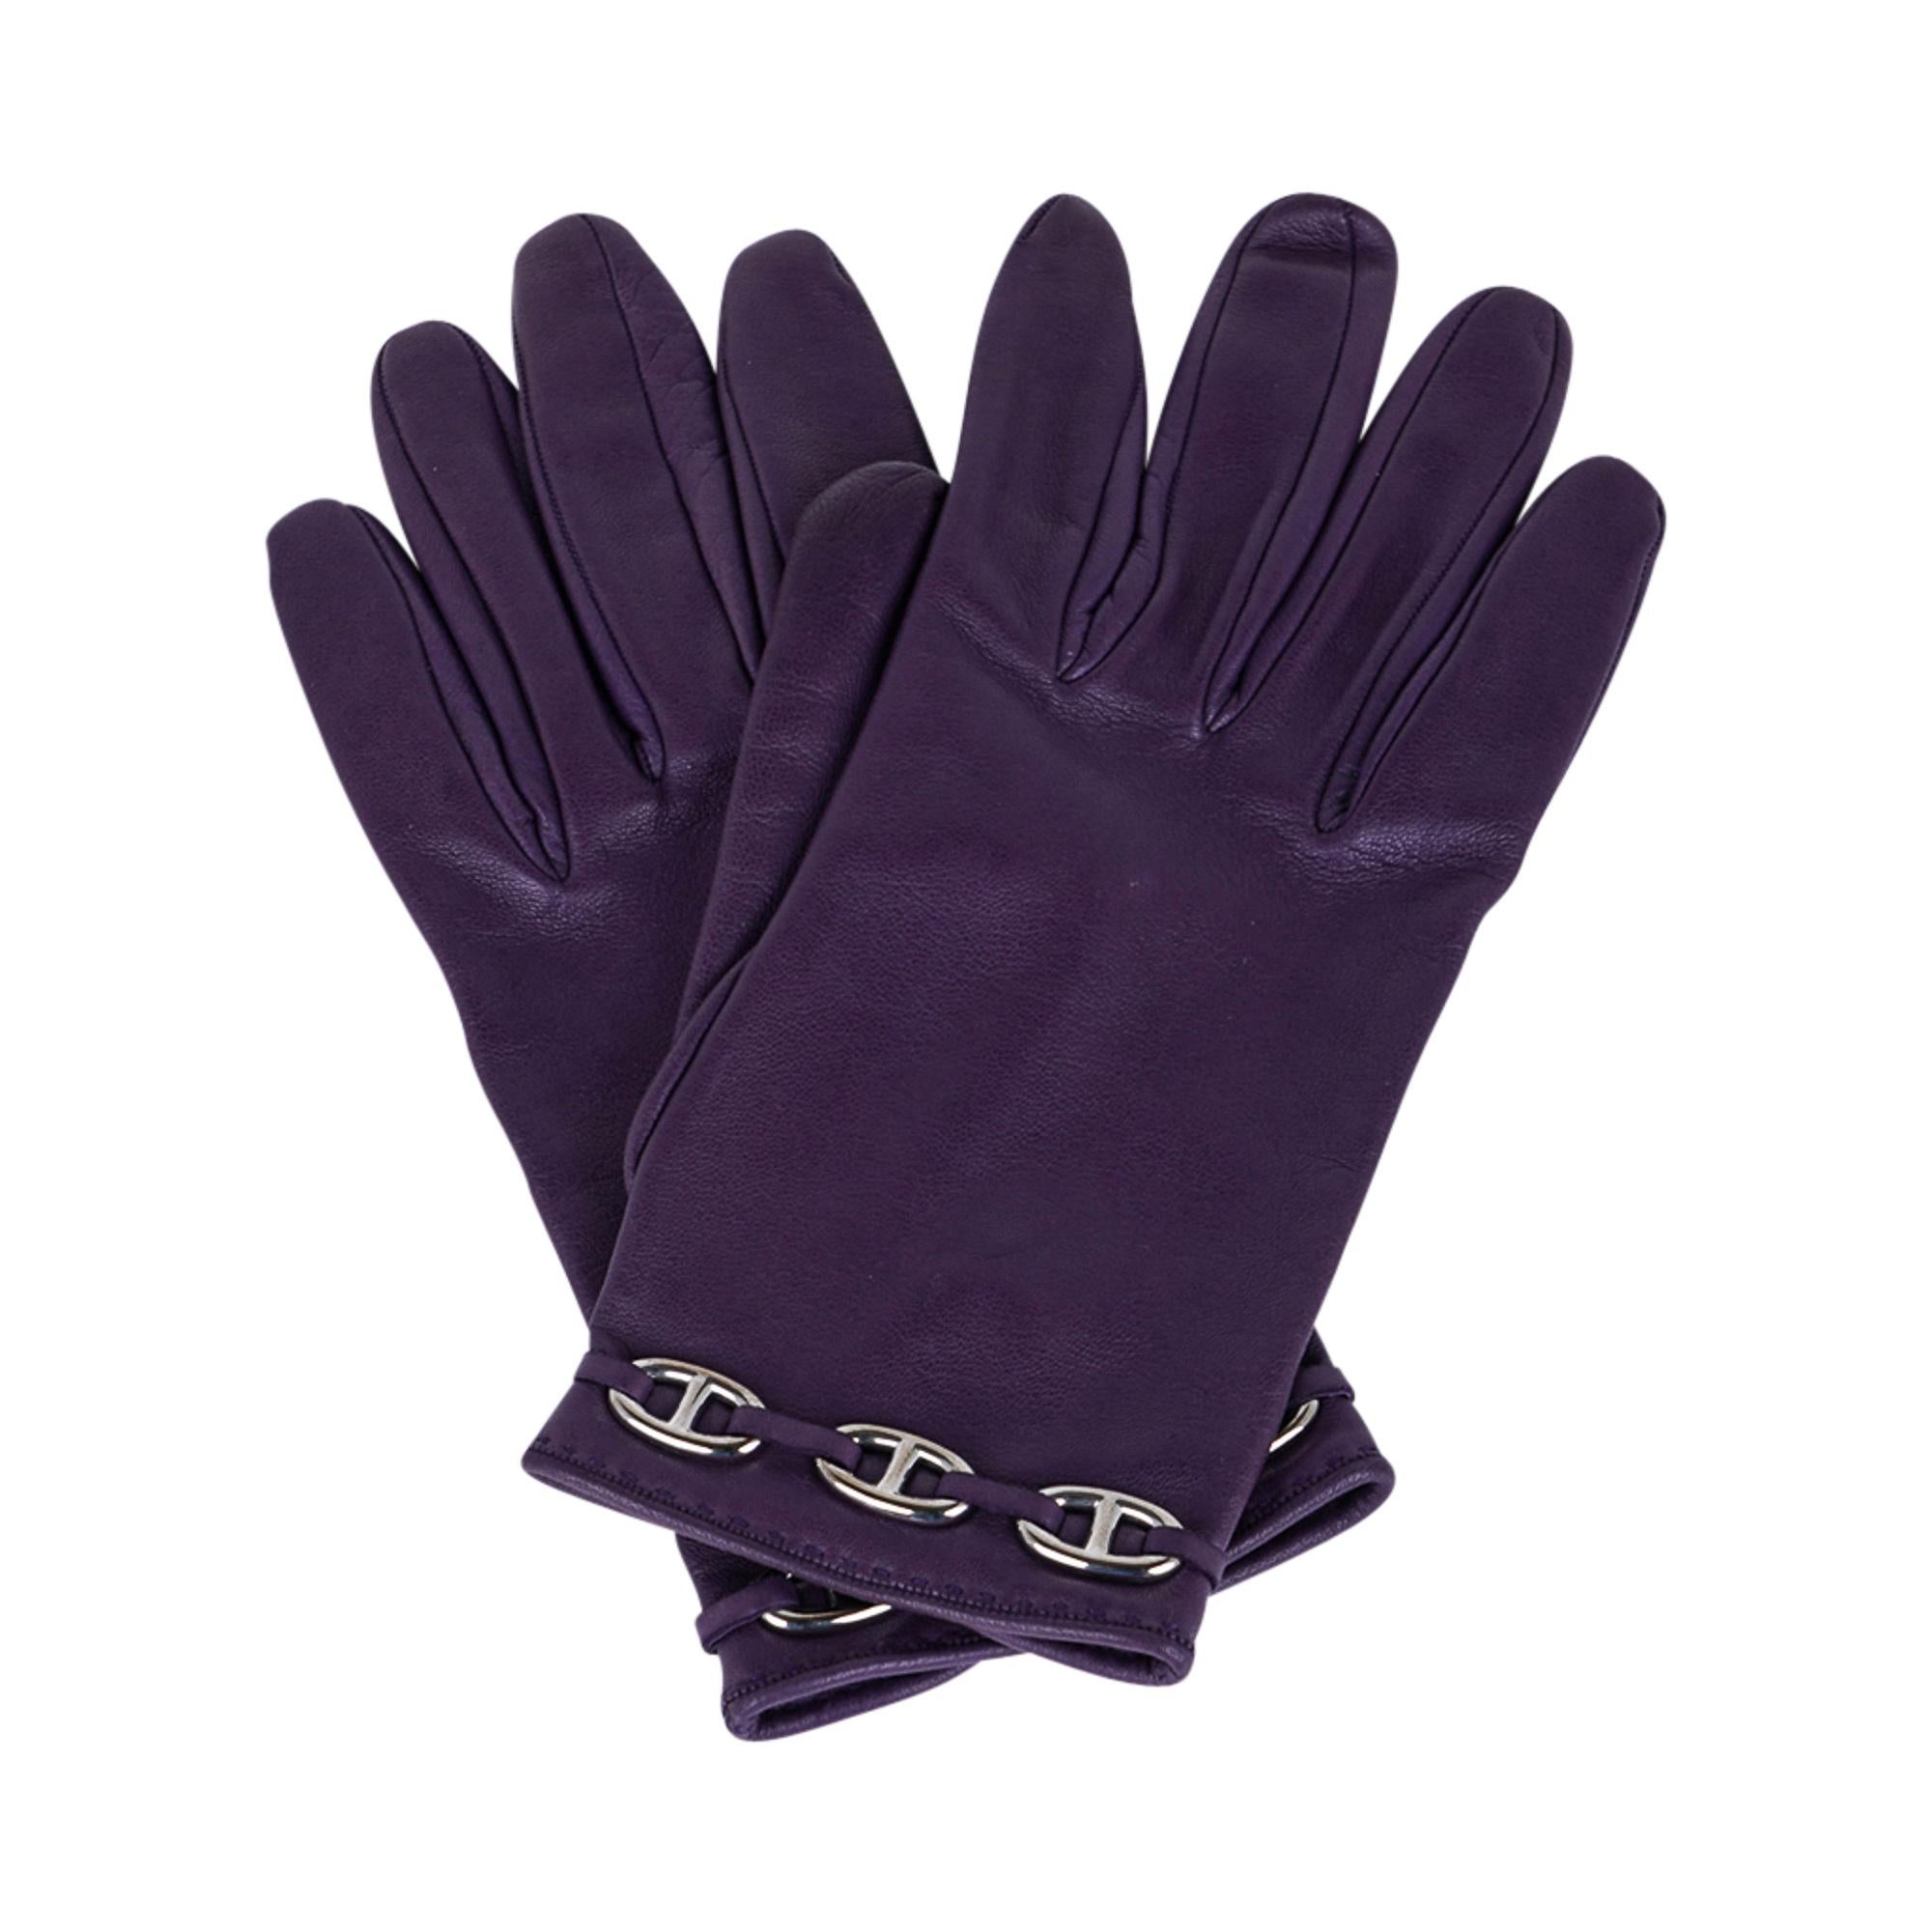 hermes fingerless gloves